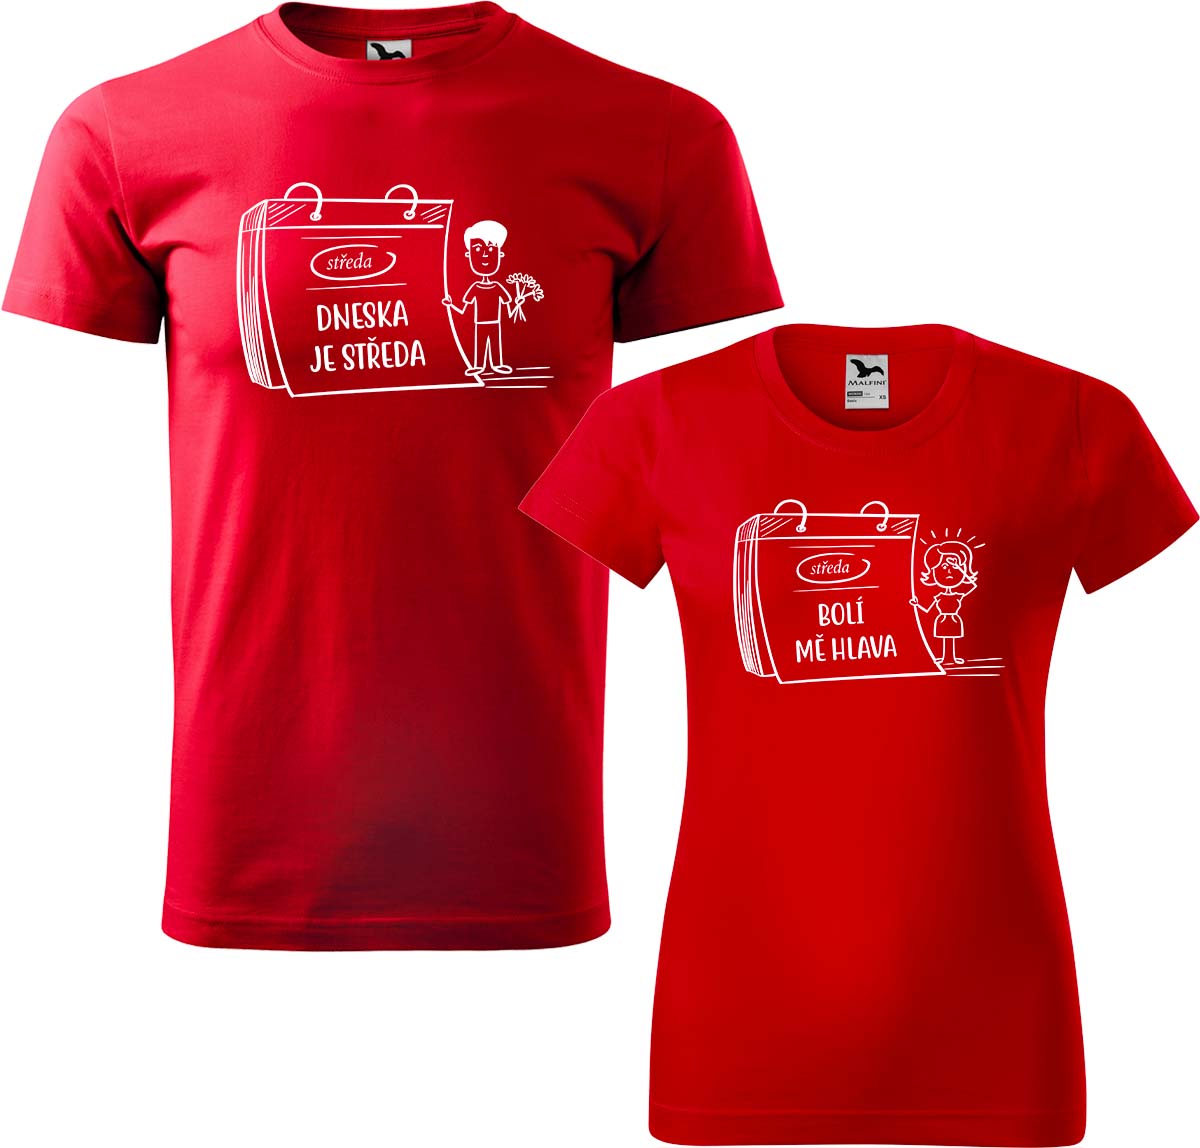 Trička pro páry - Dneska je středa Barva: Červená (07), Velikost dámské tričko: M, Velikost pánské tričko: XL